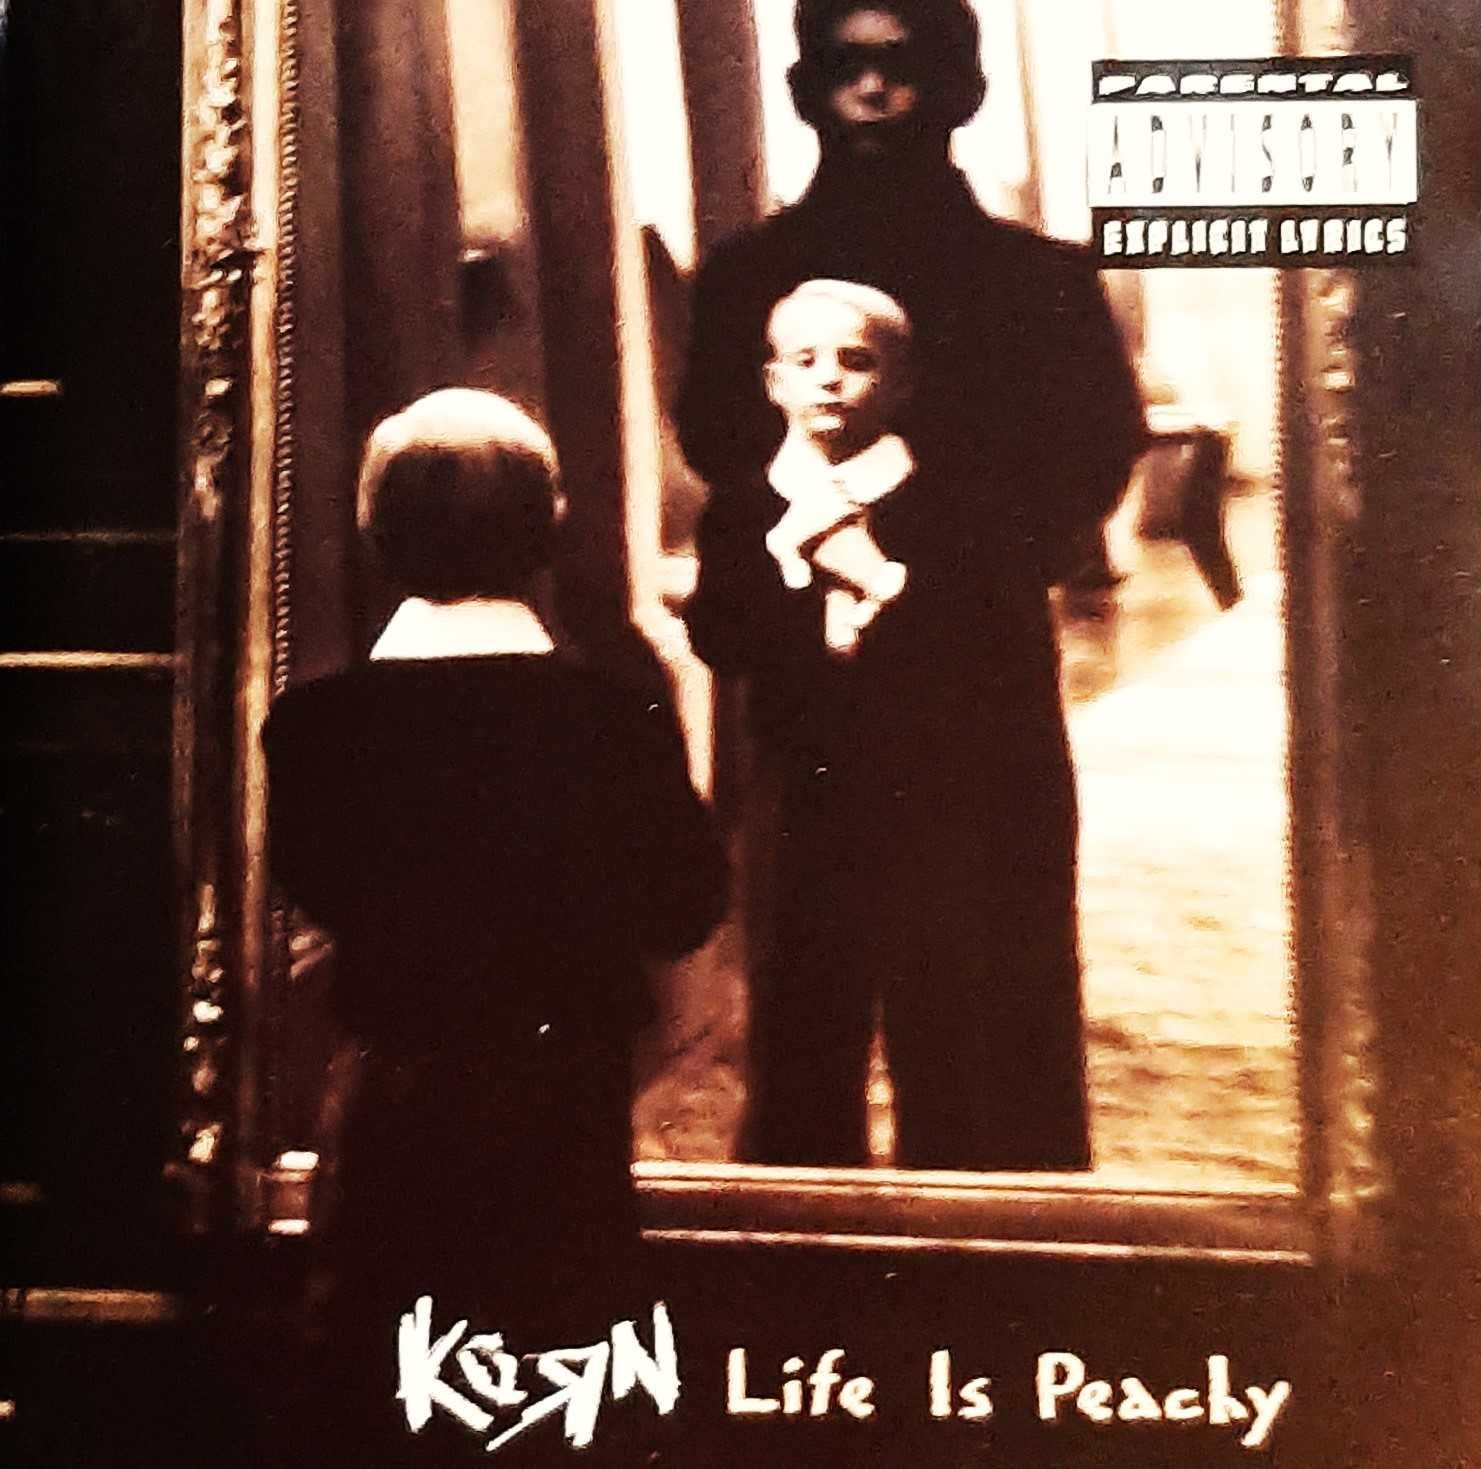 Polecam Album CD Kultowego zespołu KORN- Album Life Is Peachy CD